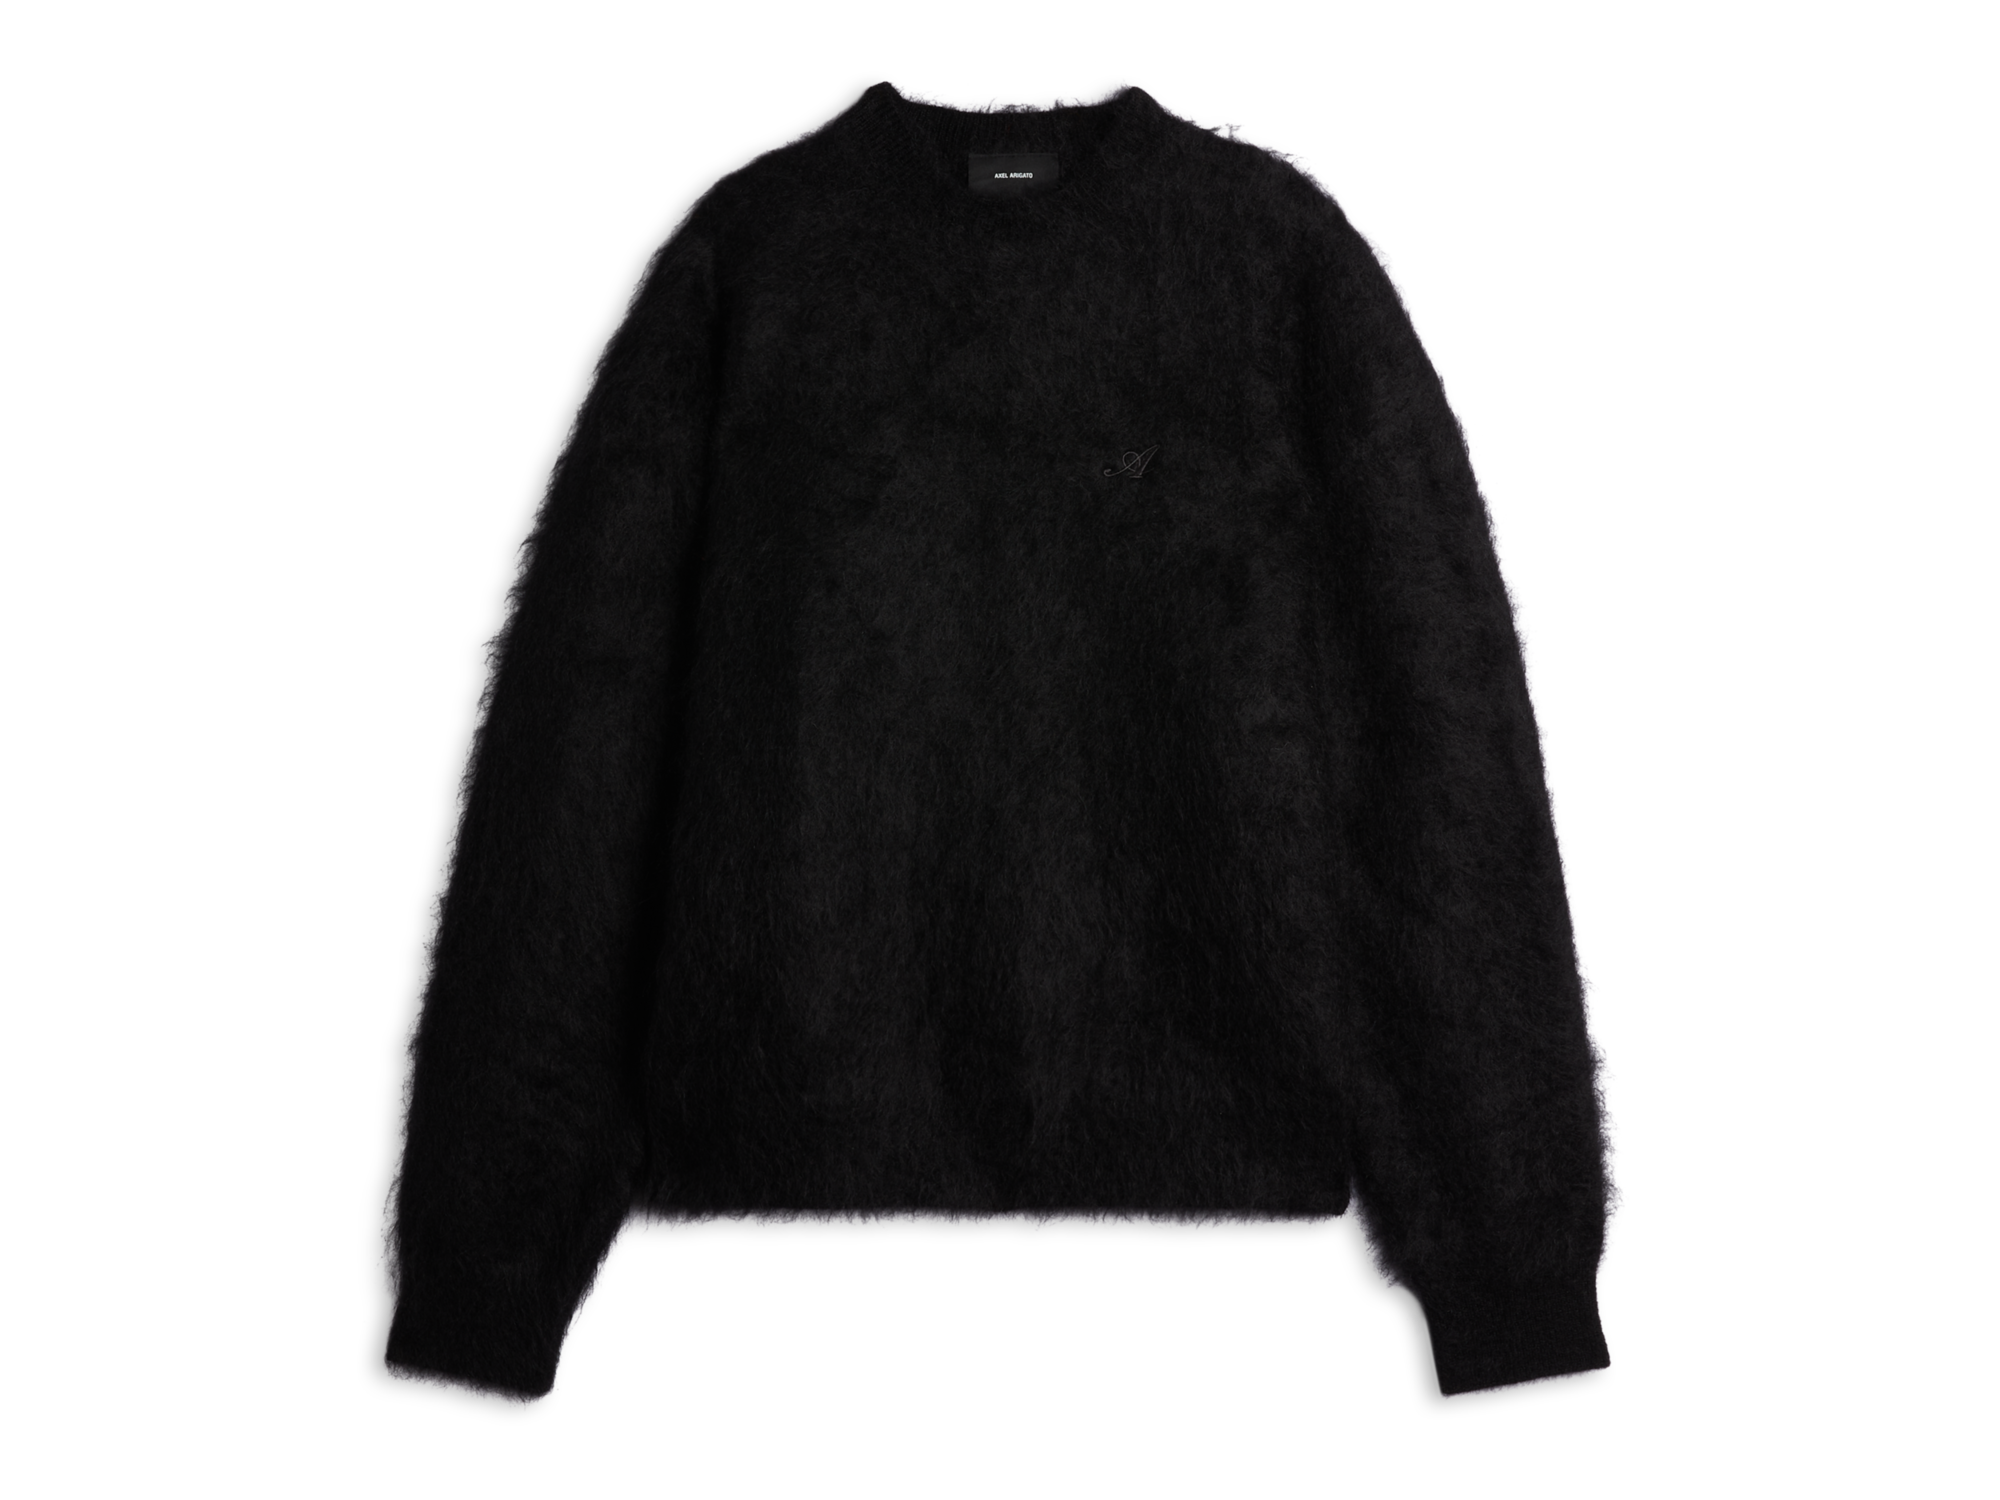 Primary Sweater